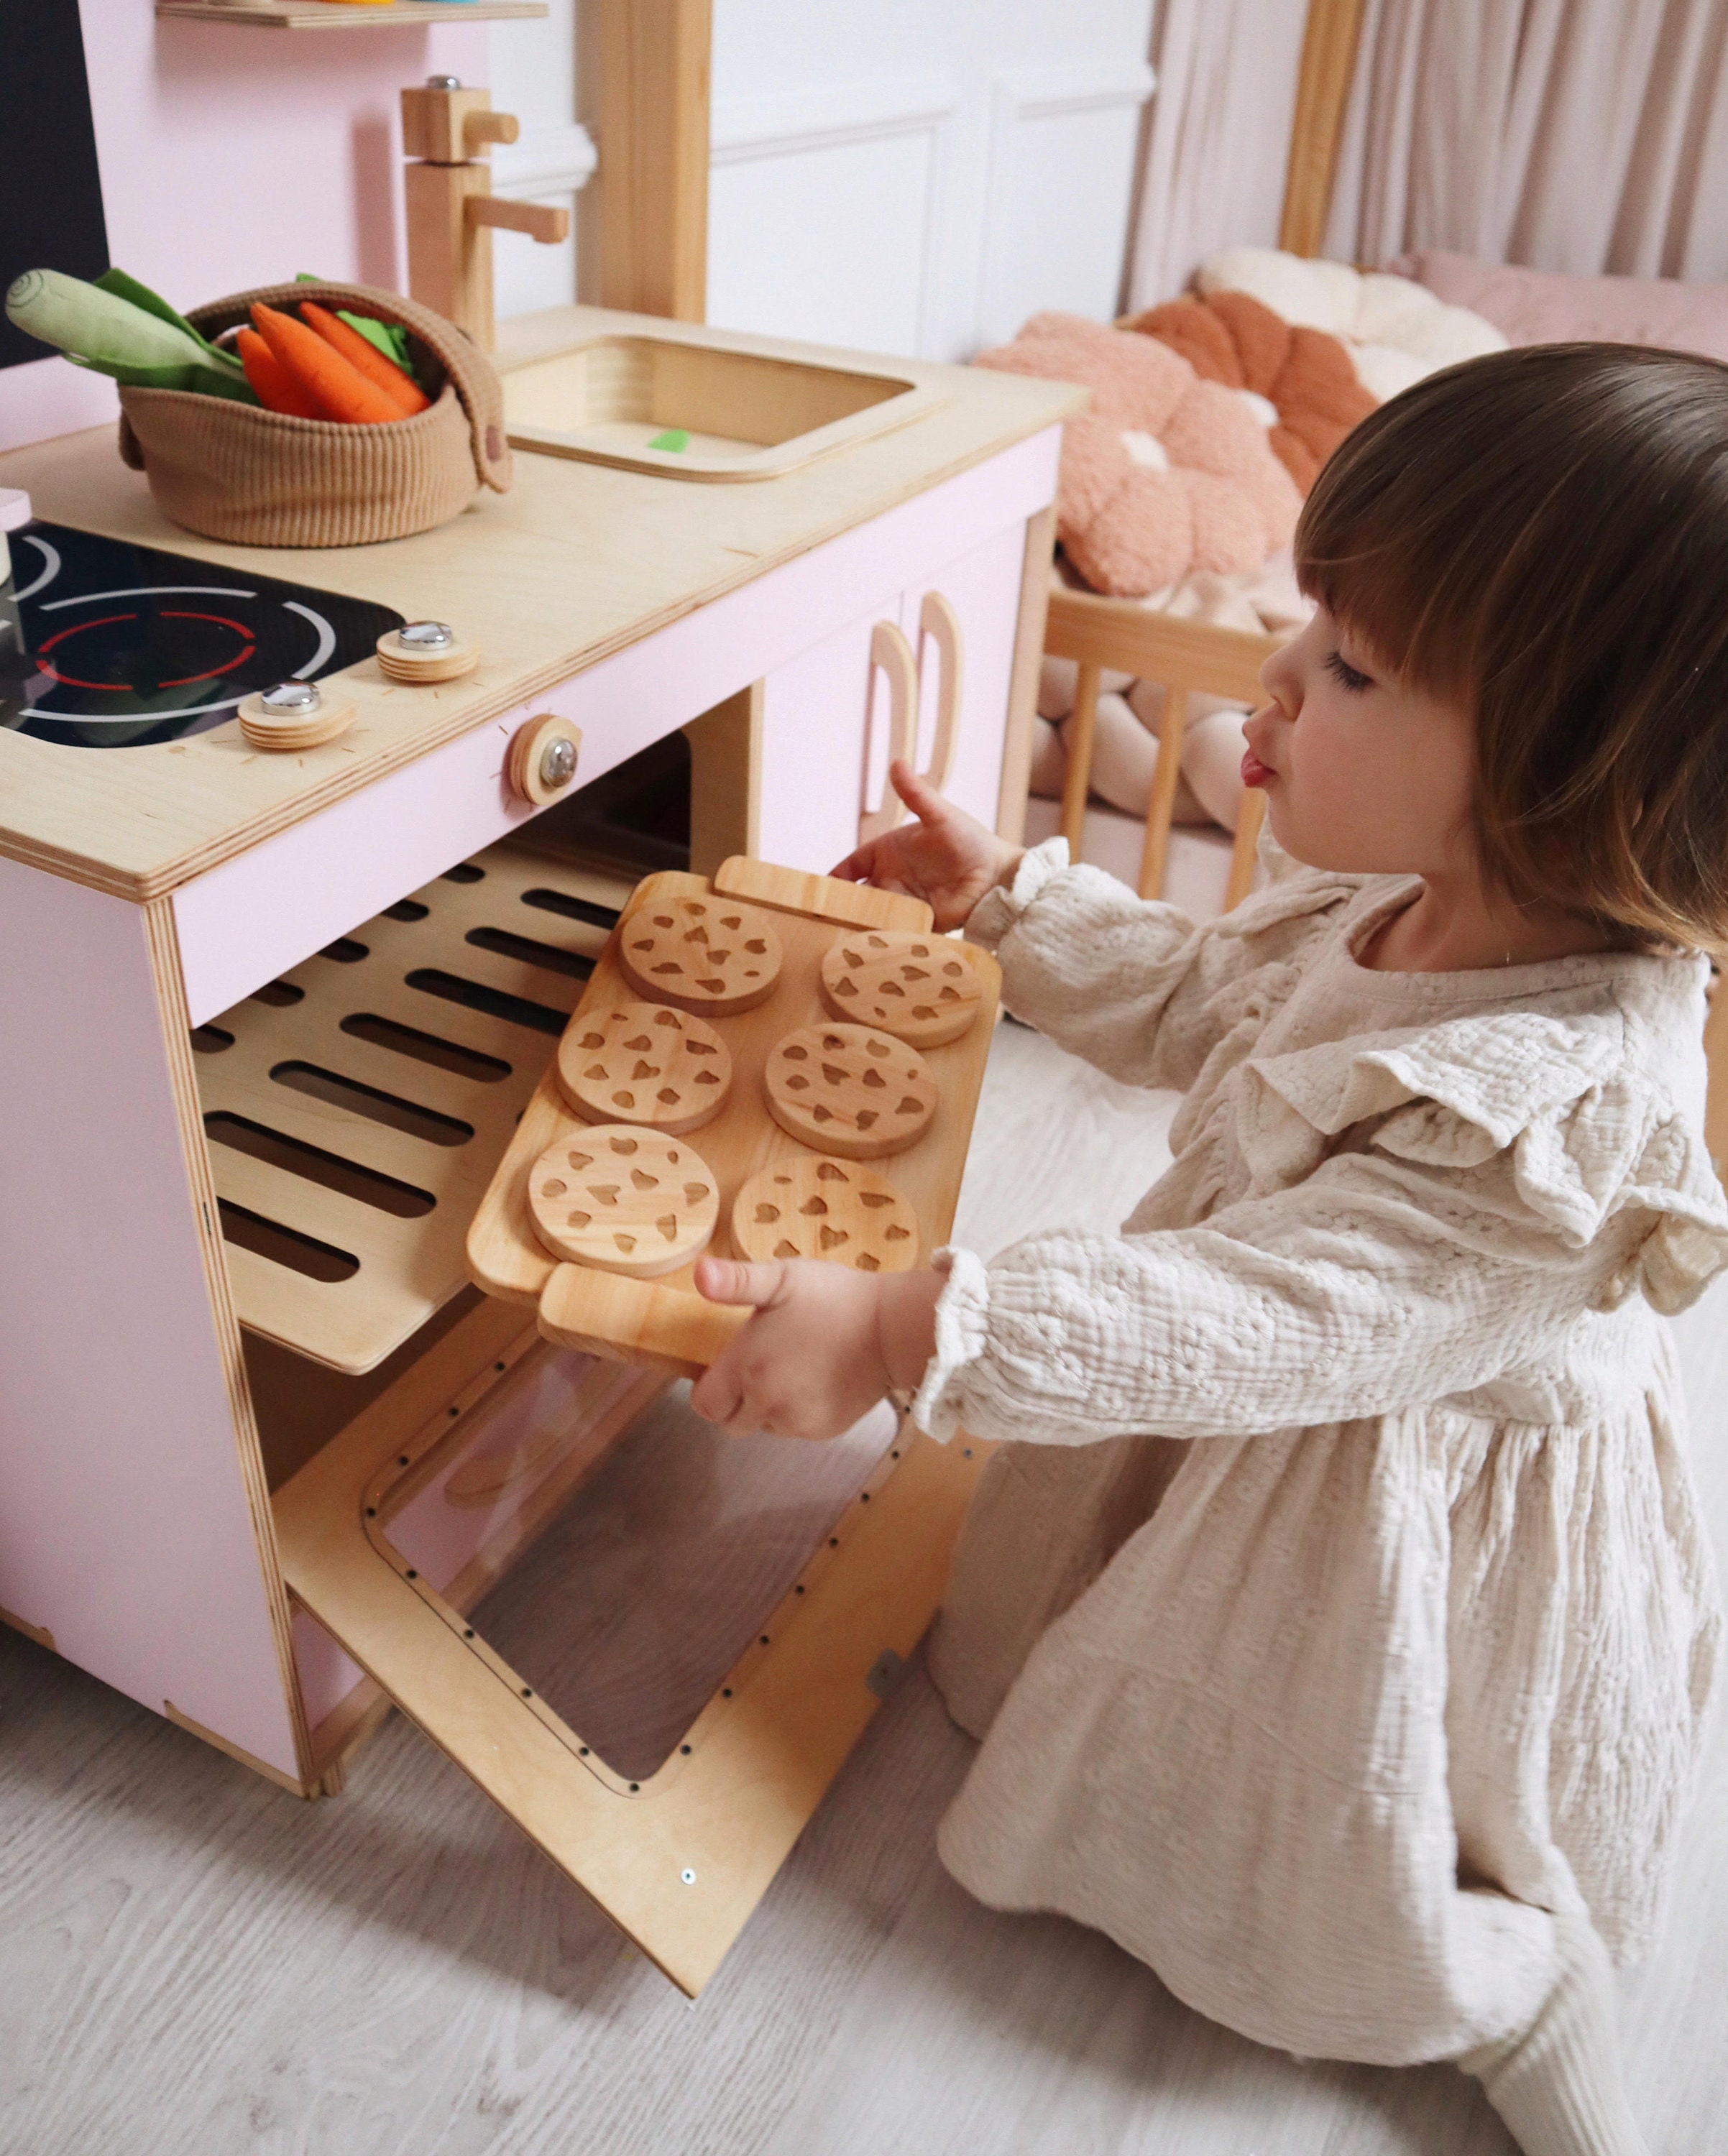 Montessori Wooden Play House Toys Children Kitchen Pretend Toy